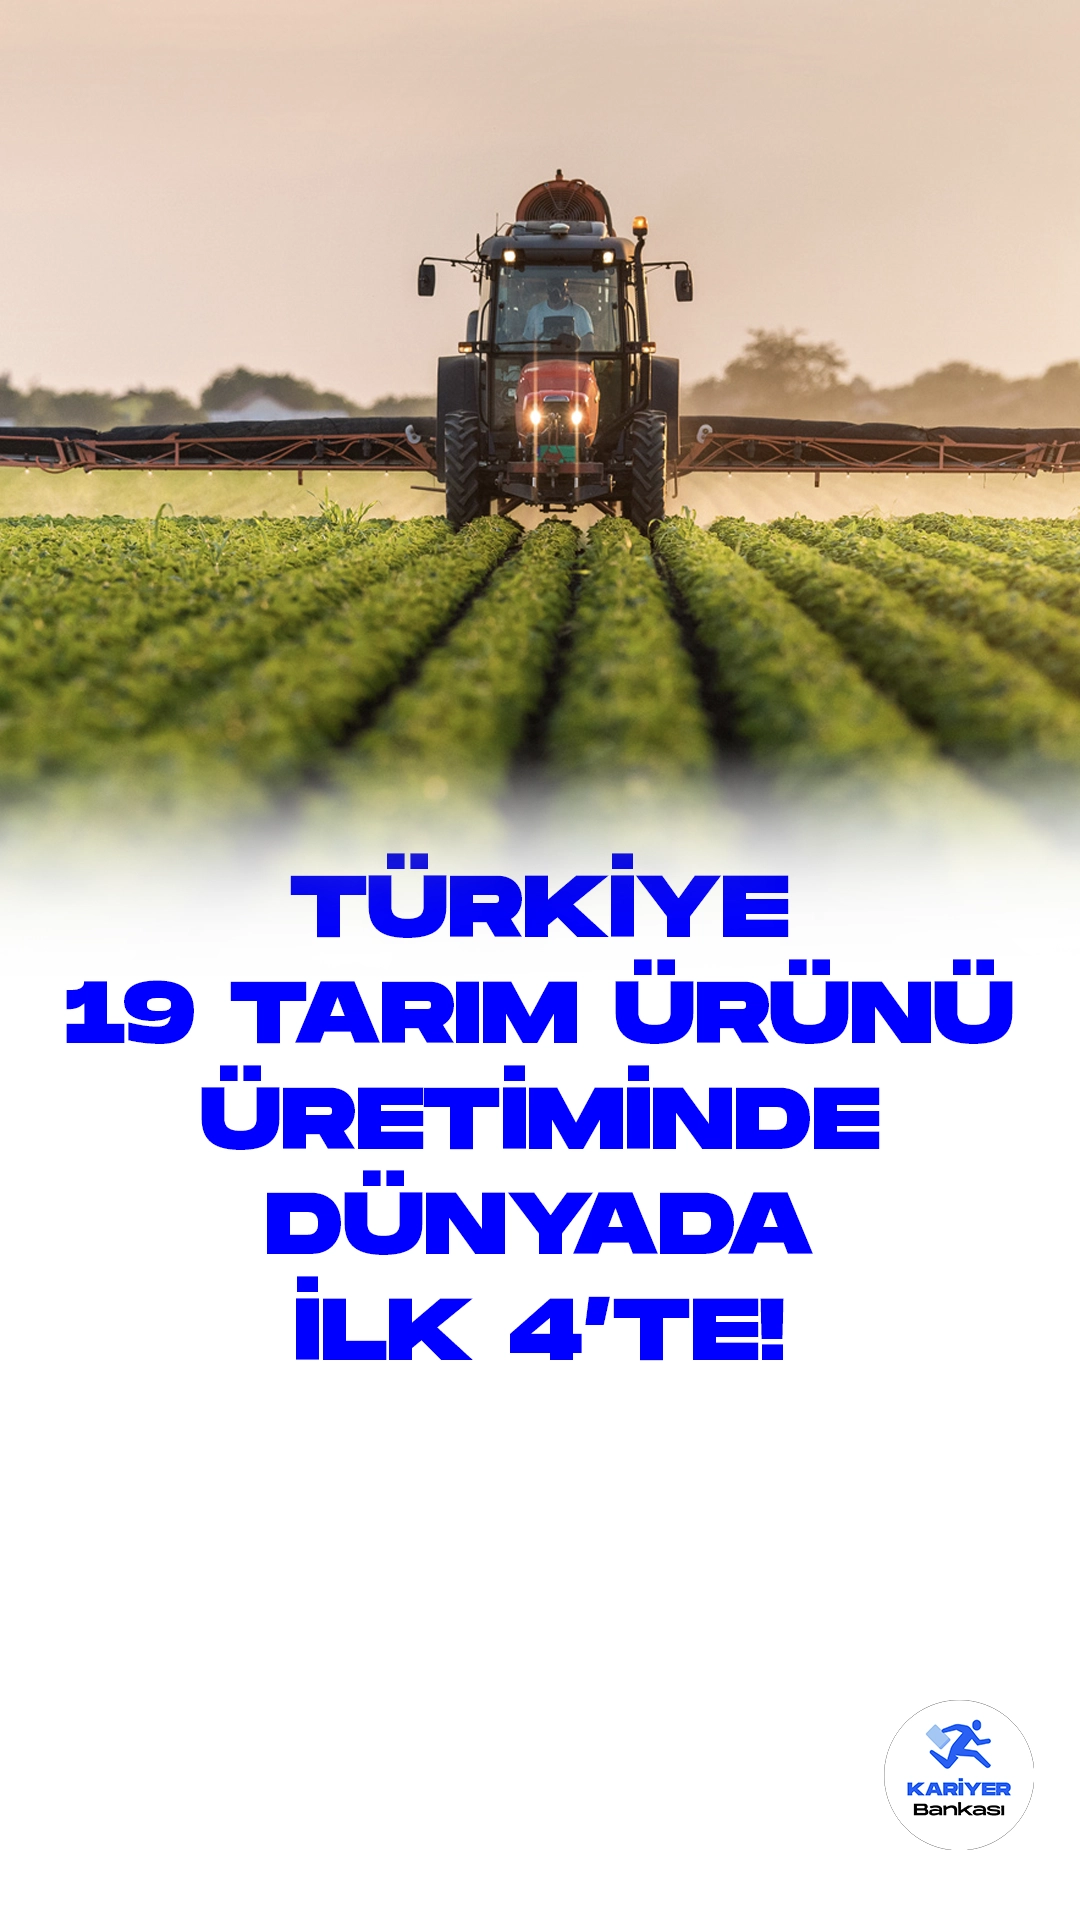 Türkiye 19 Tarım Ürününün Üretiminde Dünyada İlk 4'te!TZOB Genel Başkanı Şemsi Bayraktar, "Tutum, Yatırım ve Türk Malları Haftası" kapsamında yaptığı açıklamada, yerli üretimin ve tanıtımının büyük öneme sahip olduğunu belirtti.